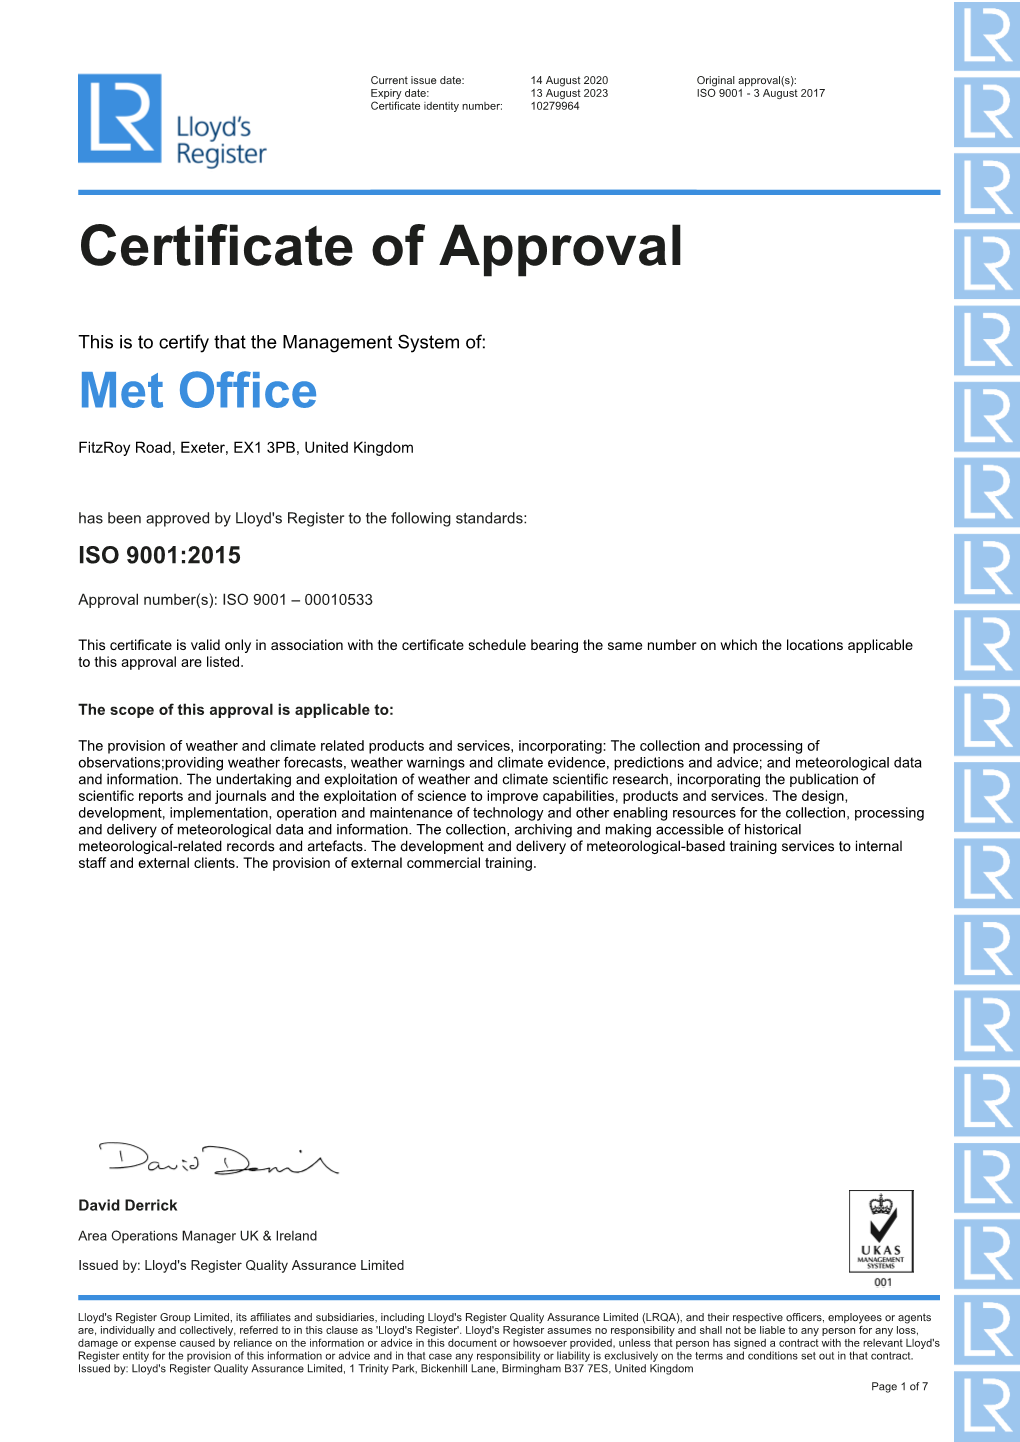 Met Office ISO 9001 Certificate